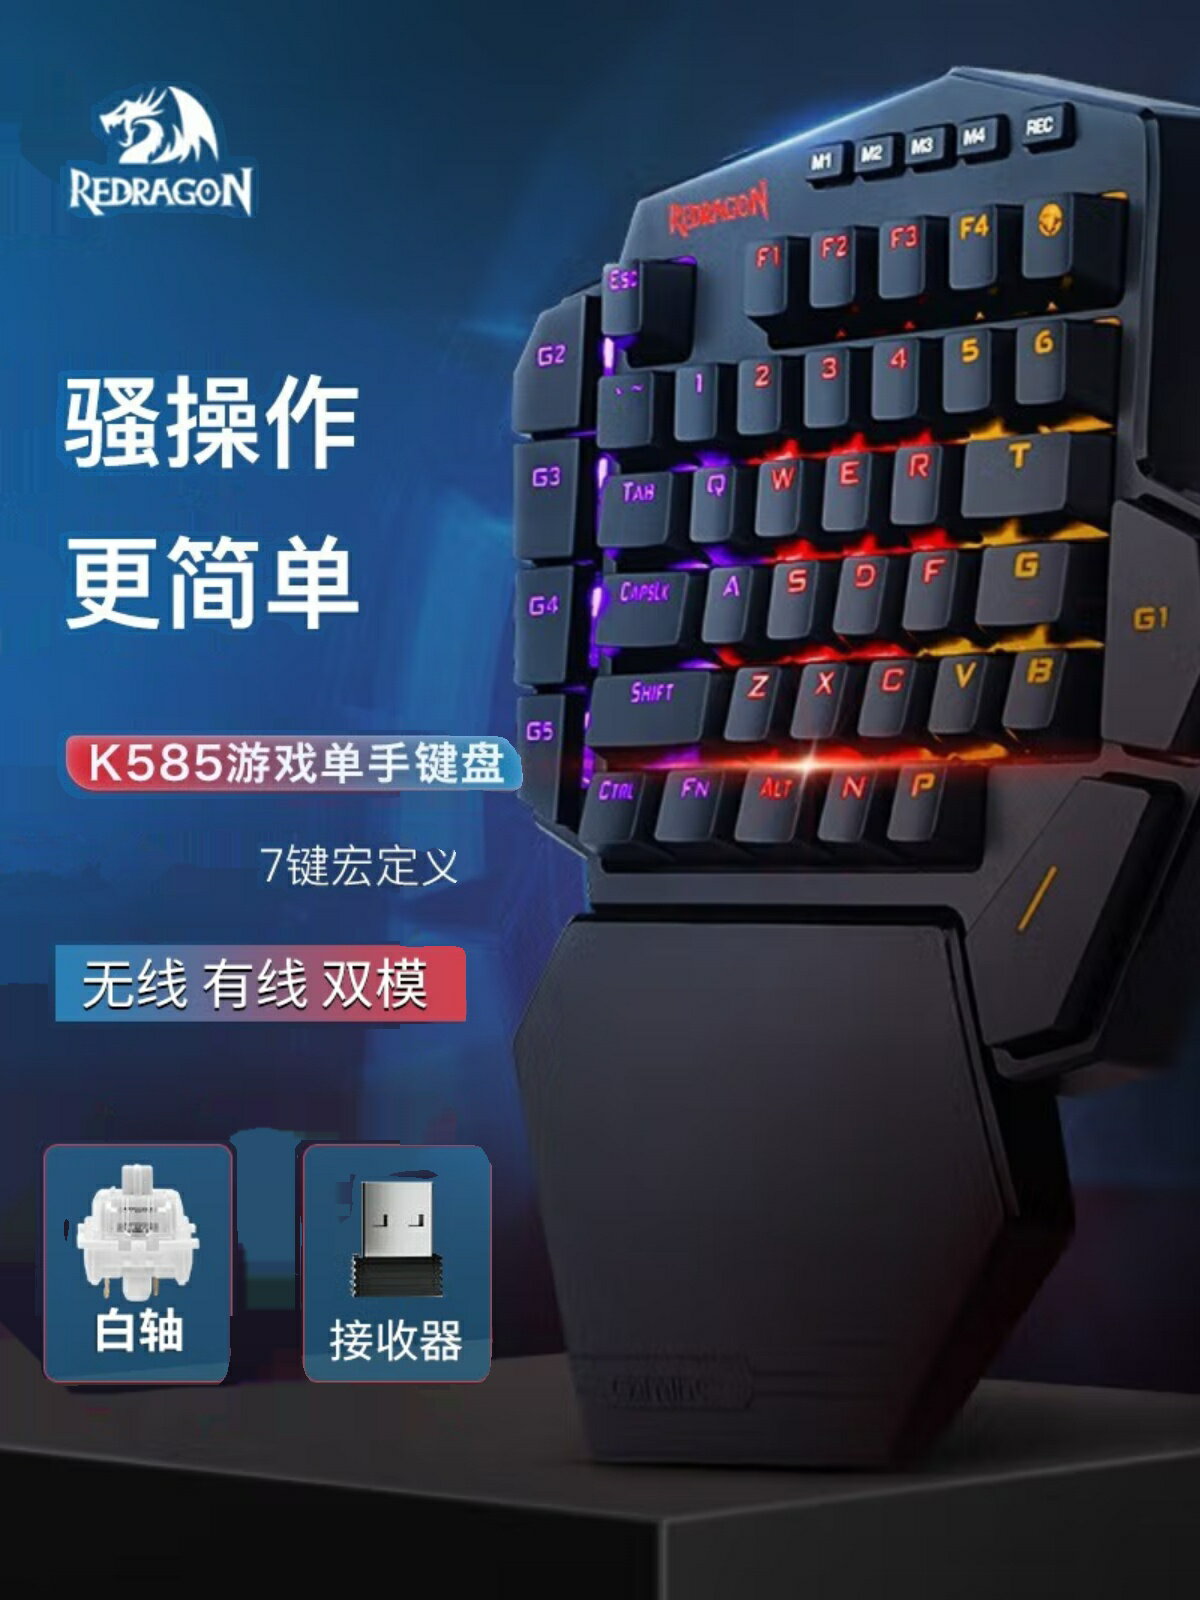 紅龍K585無線游戲自定義吃雞臺式左手外接王座機械靜音單手小鍵盤